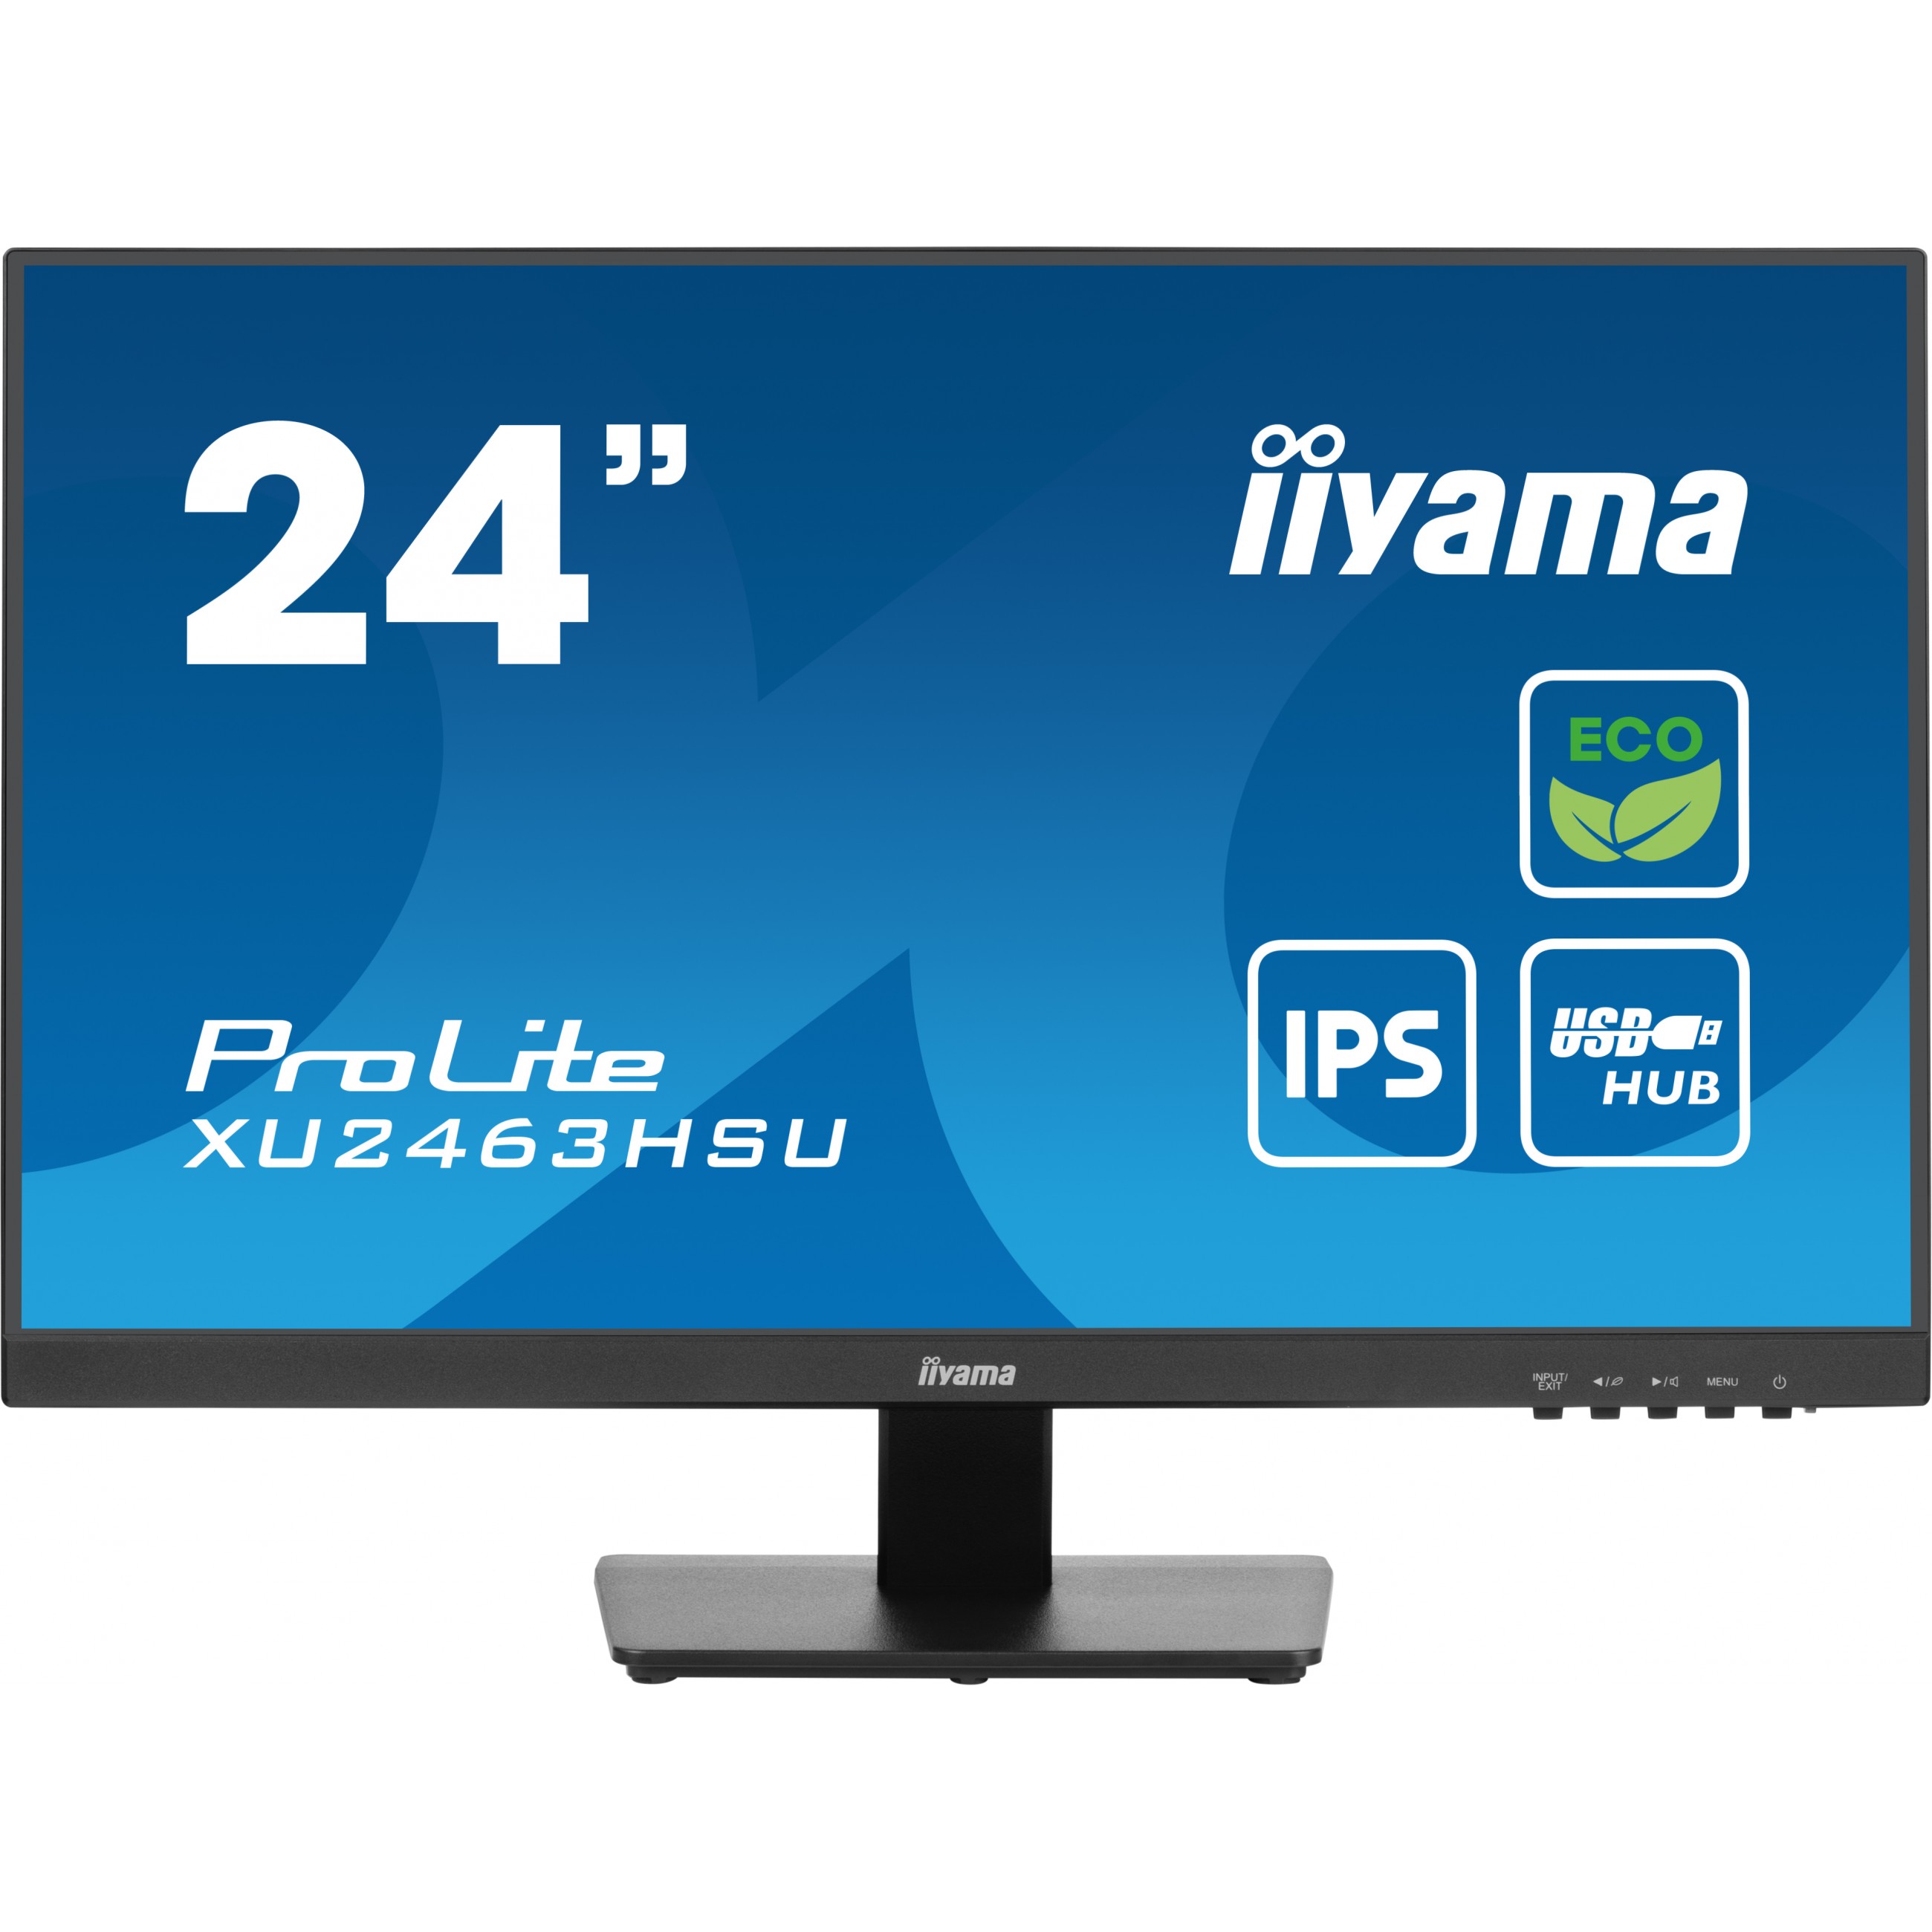 iiyama XU2463HSU-B1, Monitore, iiyama ProLite computer  (BILD1)